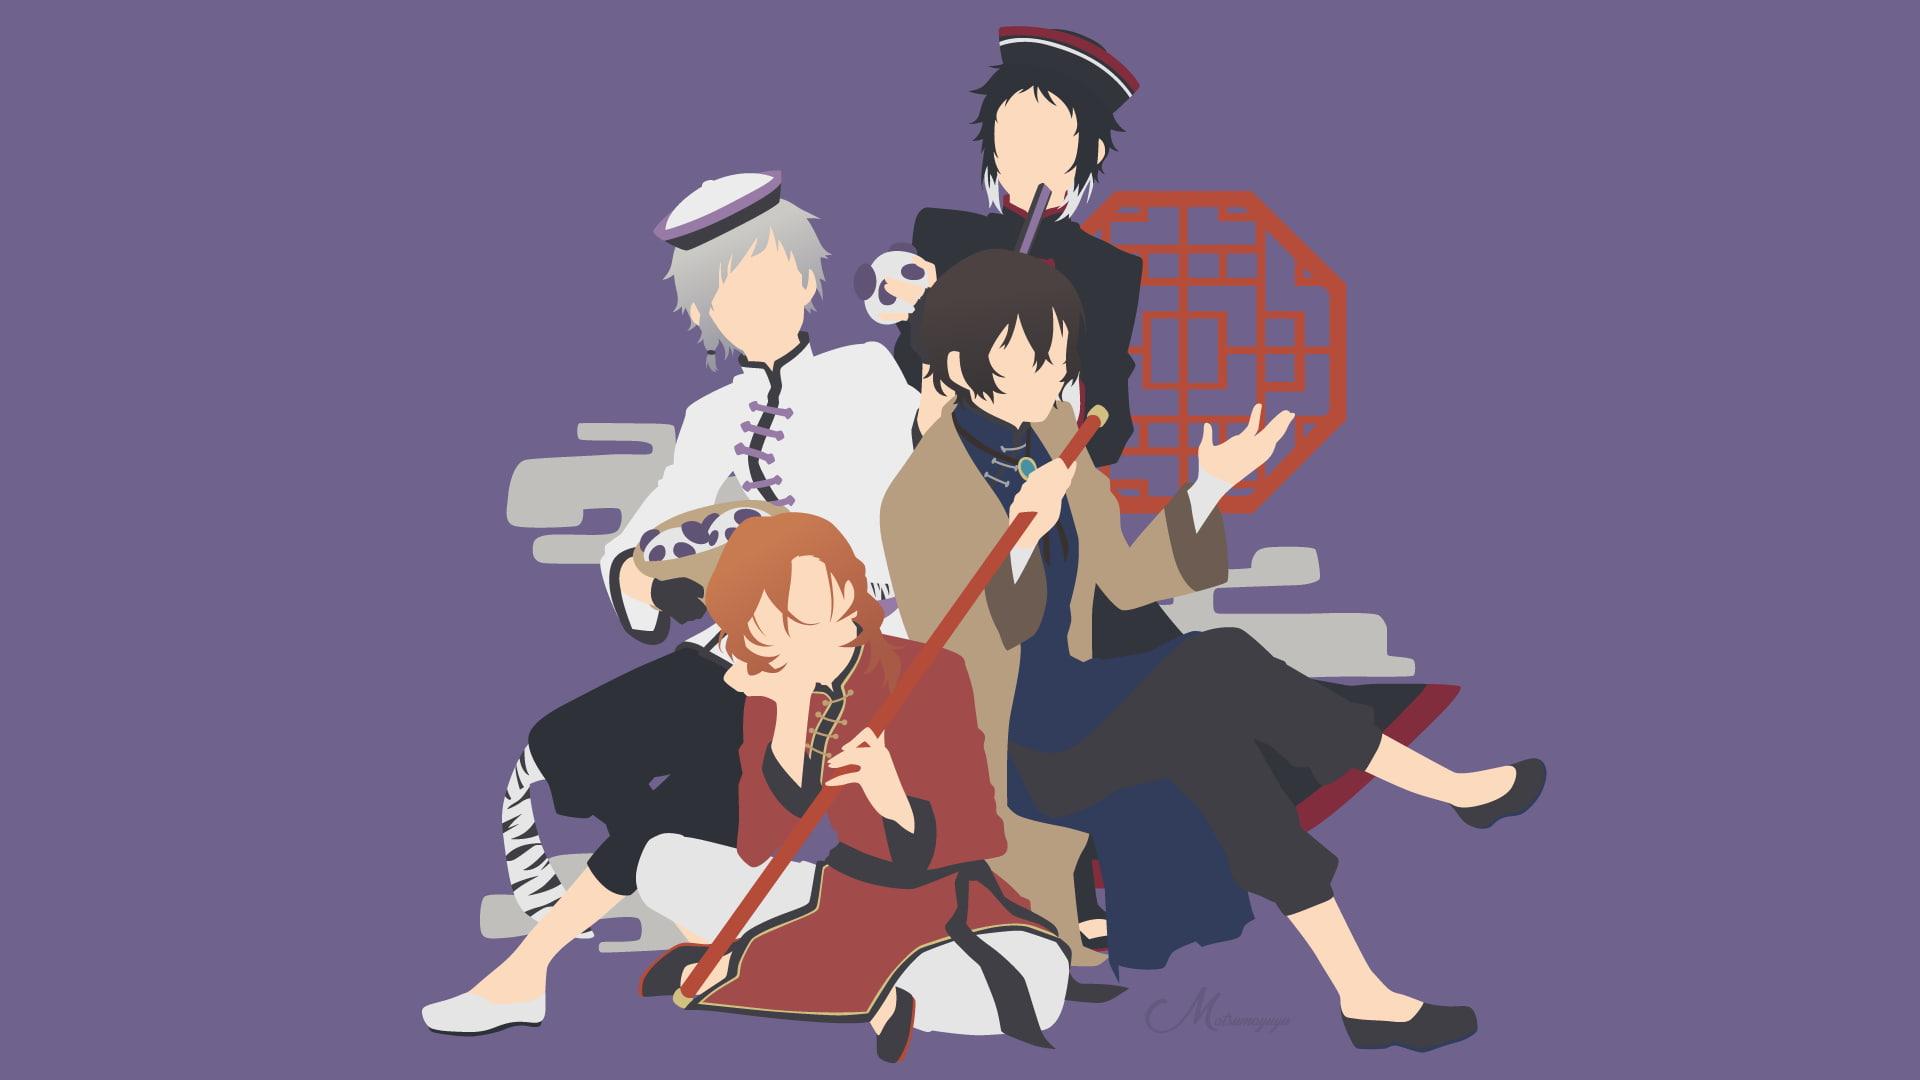 HD wallpaper: Anime, Bungou Stray Dogs, Akiko Yosano, Atsushi